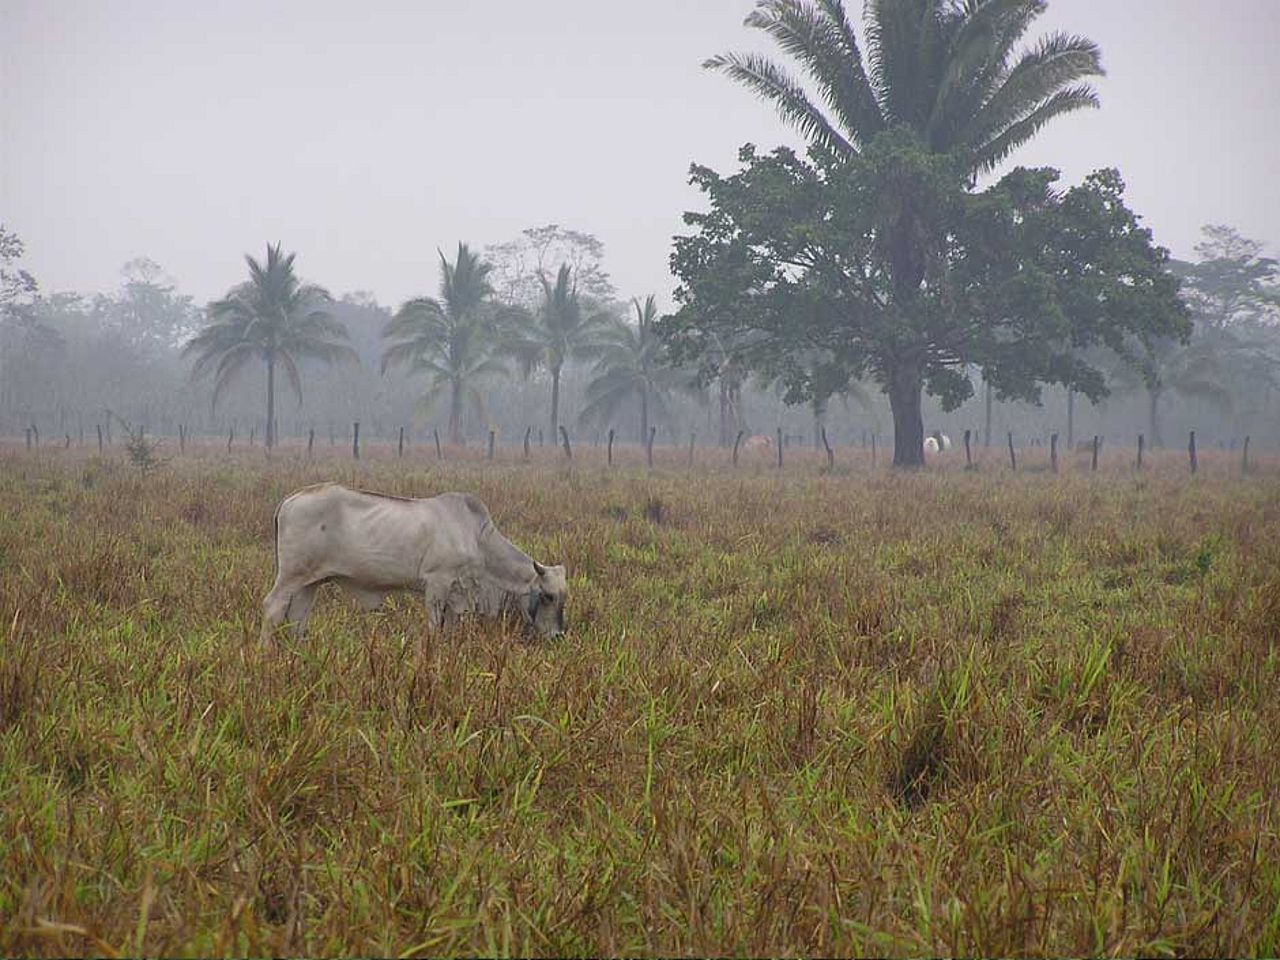 Rindfleisch-Exporte erst durch illegale Entwaldung in diesem Umfang möglich. ©OroVerde